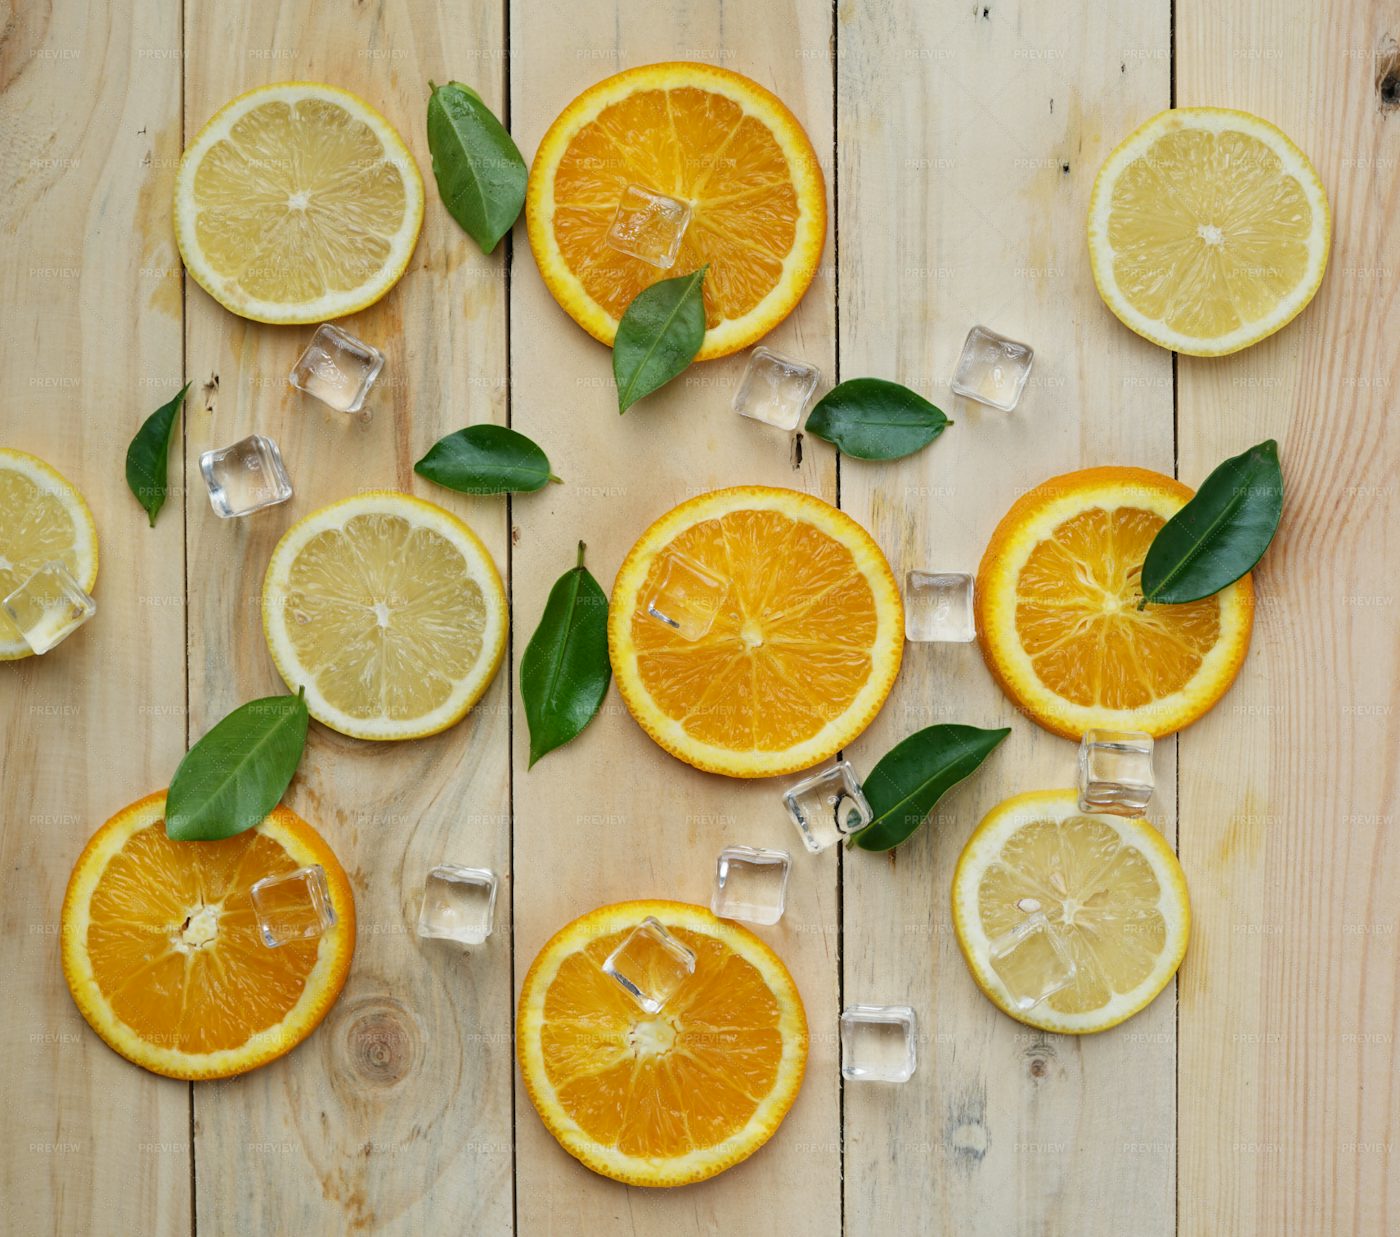 Summer Citrus Flavor: Stock Photos